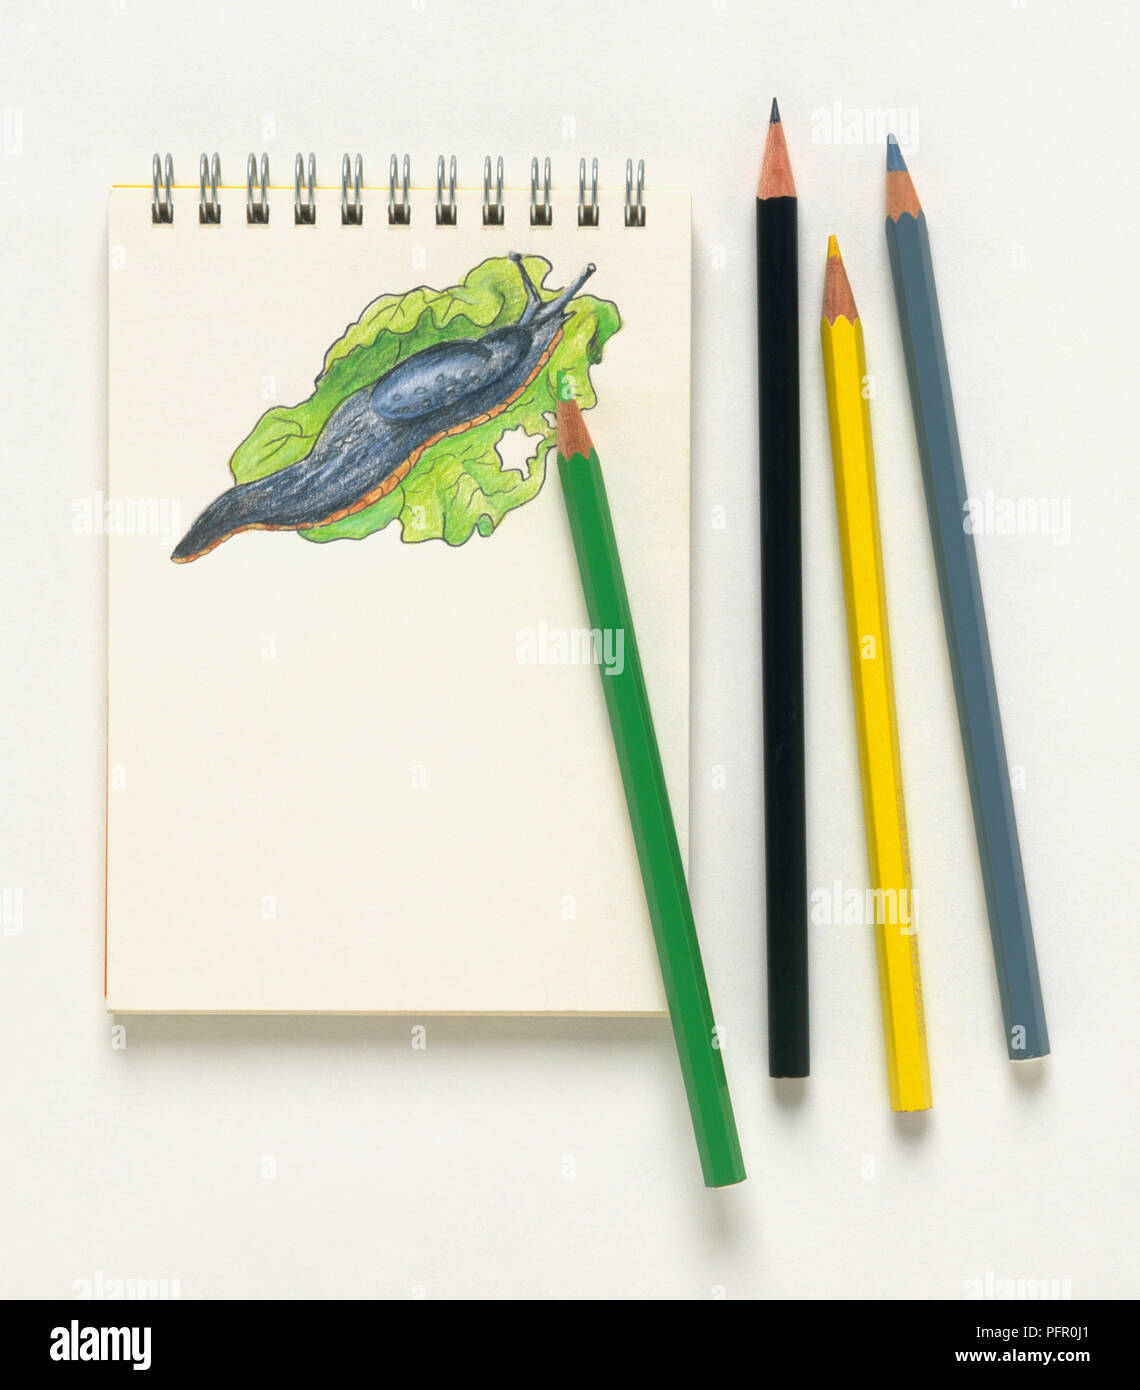 Bloc-notes avec dessin de slug et crayons de couleur Banque D'Images